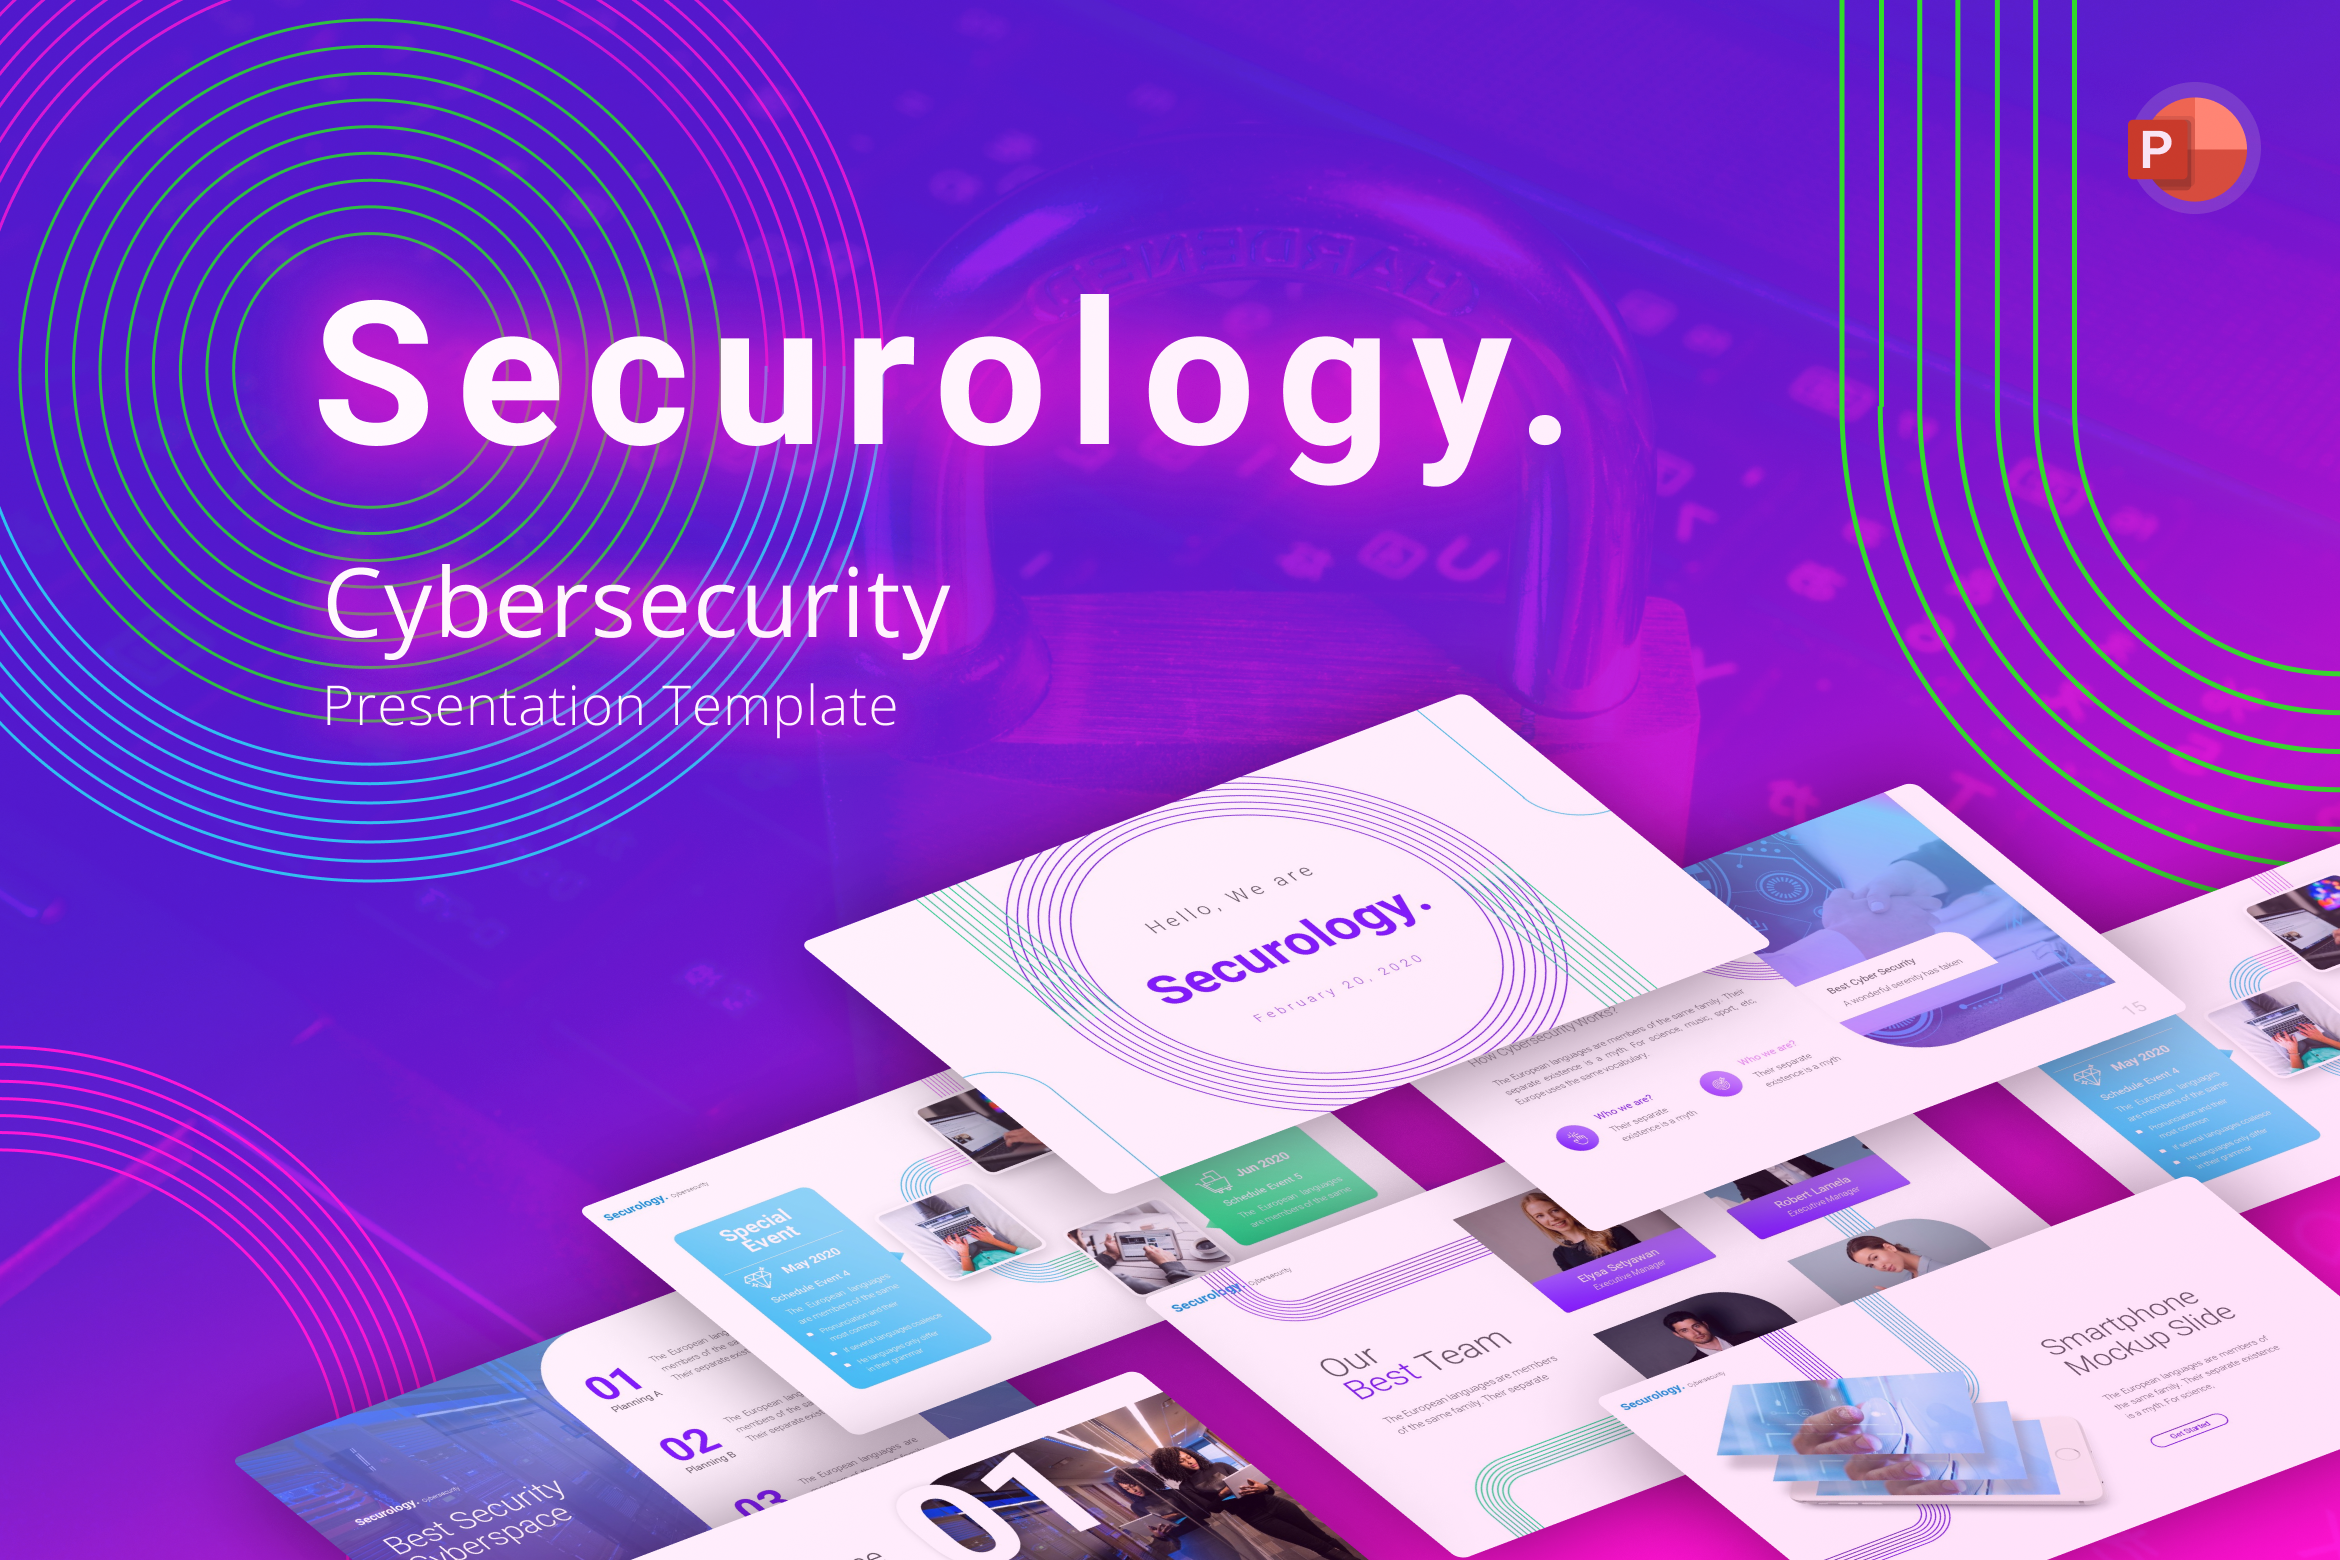 Mẫu Slide PowerPoint về An Ninh Mạng Securology sẽ giúp bạn hiểu rõ hơn về các vấn đề an ninh mạng phổ biến nhất hiện nay. Bạn sẽ được trình bày với hình ảnh sinh động và các ví dụ thực tế giúp bạn hiểu rõ các thông tin liên quan đến an ninh mạng. Hãy xem ngay để cập nhật kiến thức!